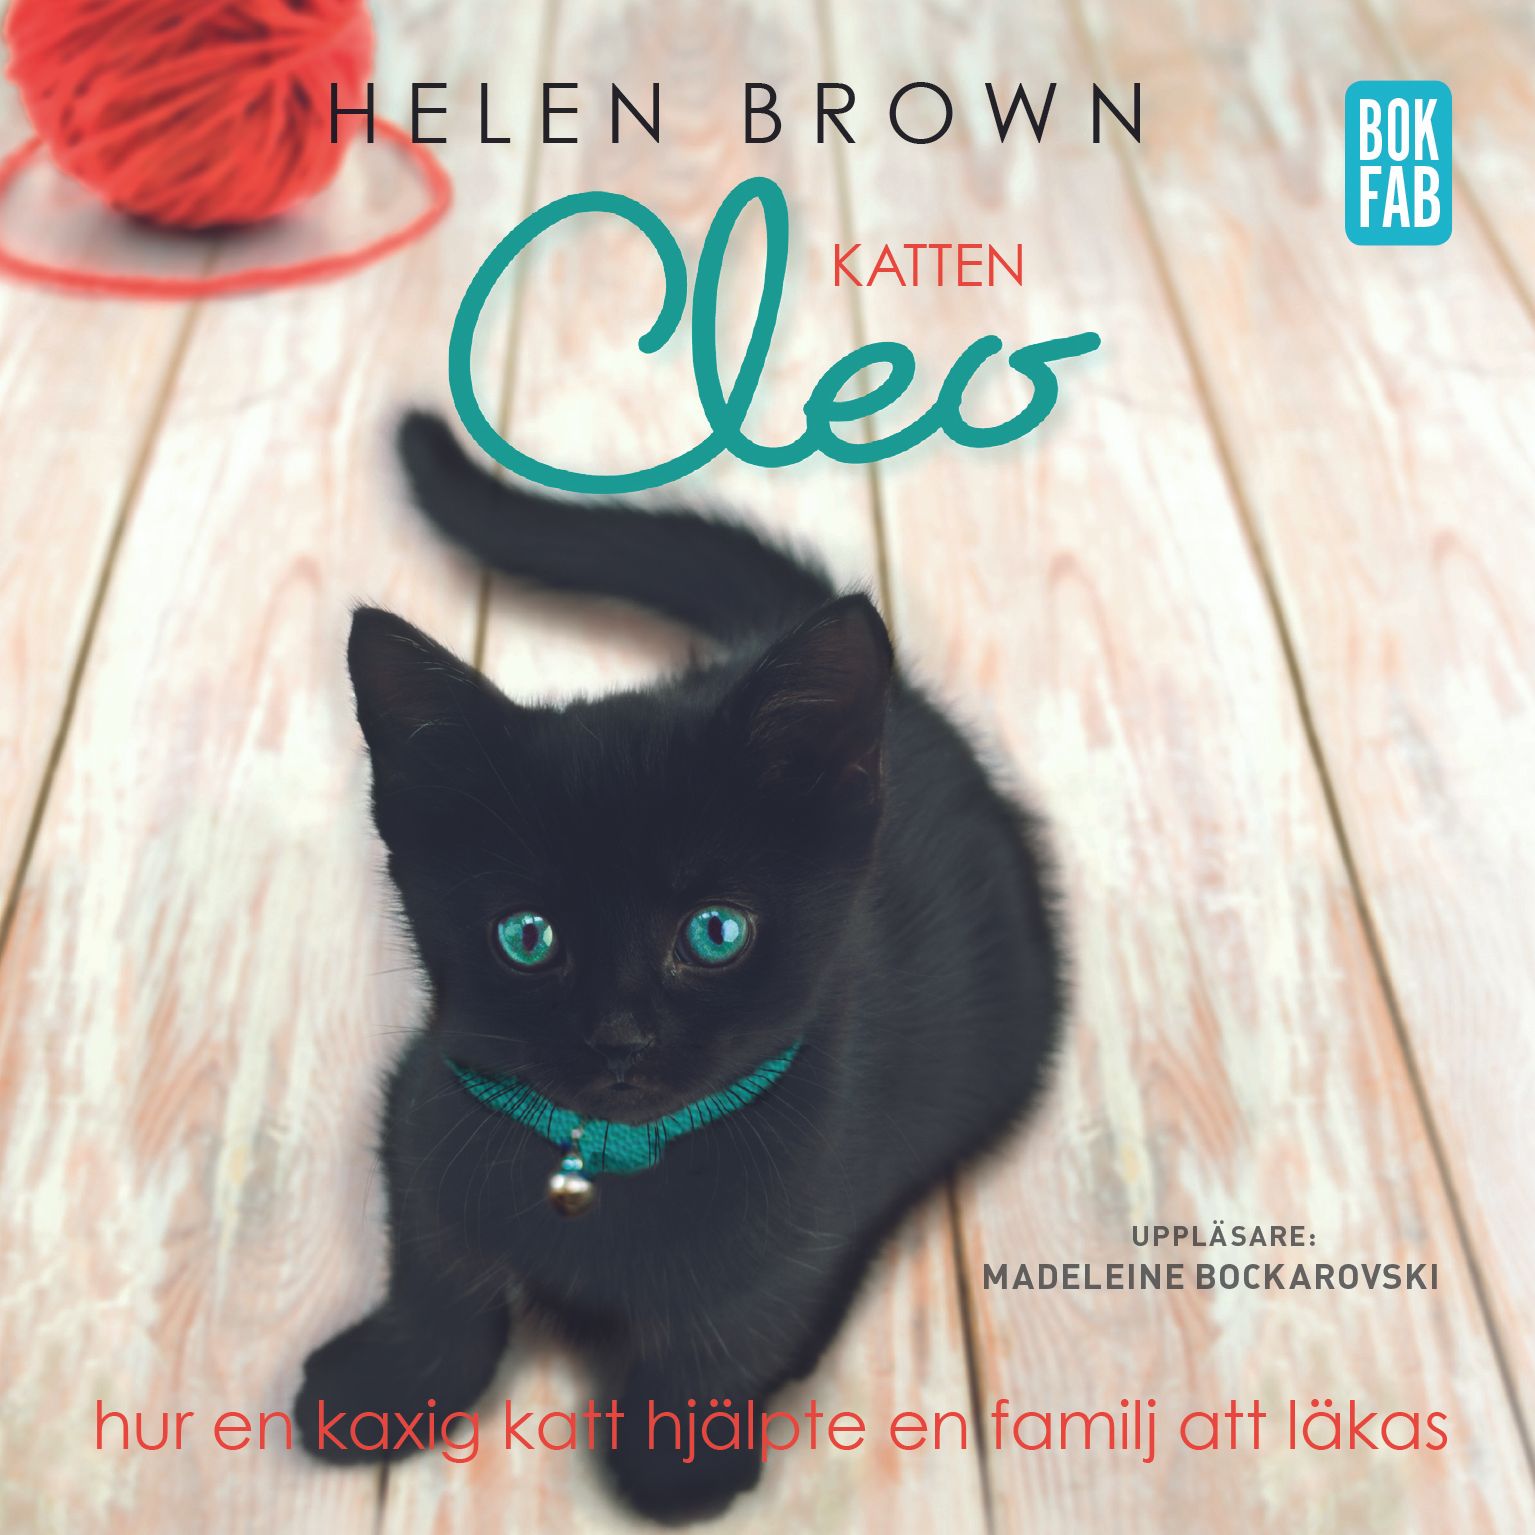 Katten Cleo - Hur en kaxig katt hjälpte en familj att läkas, ljudbok av Helen Brown